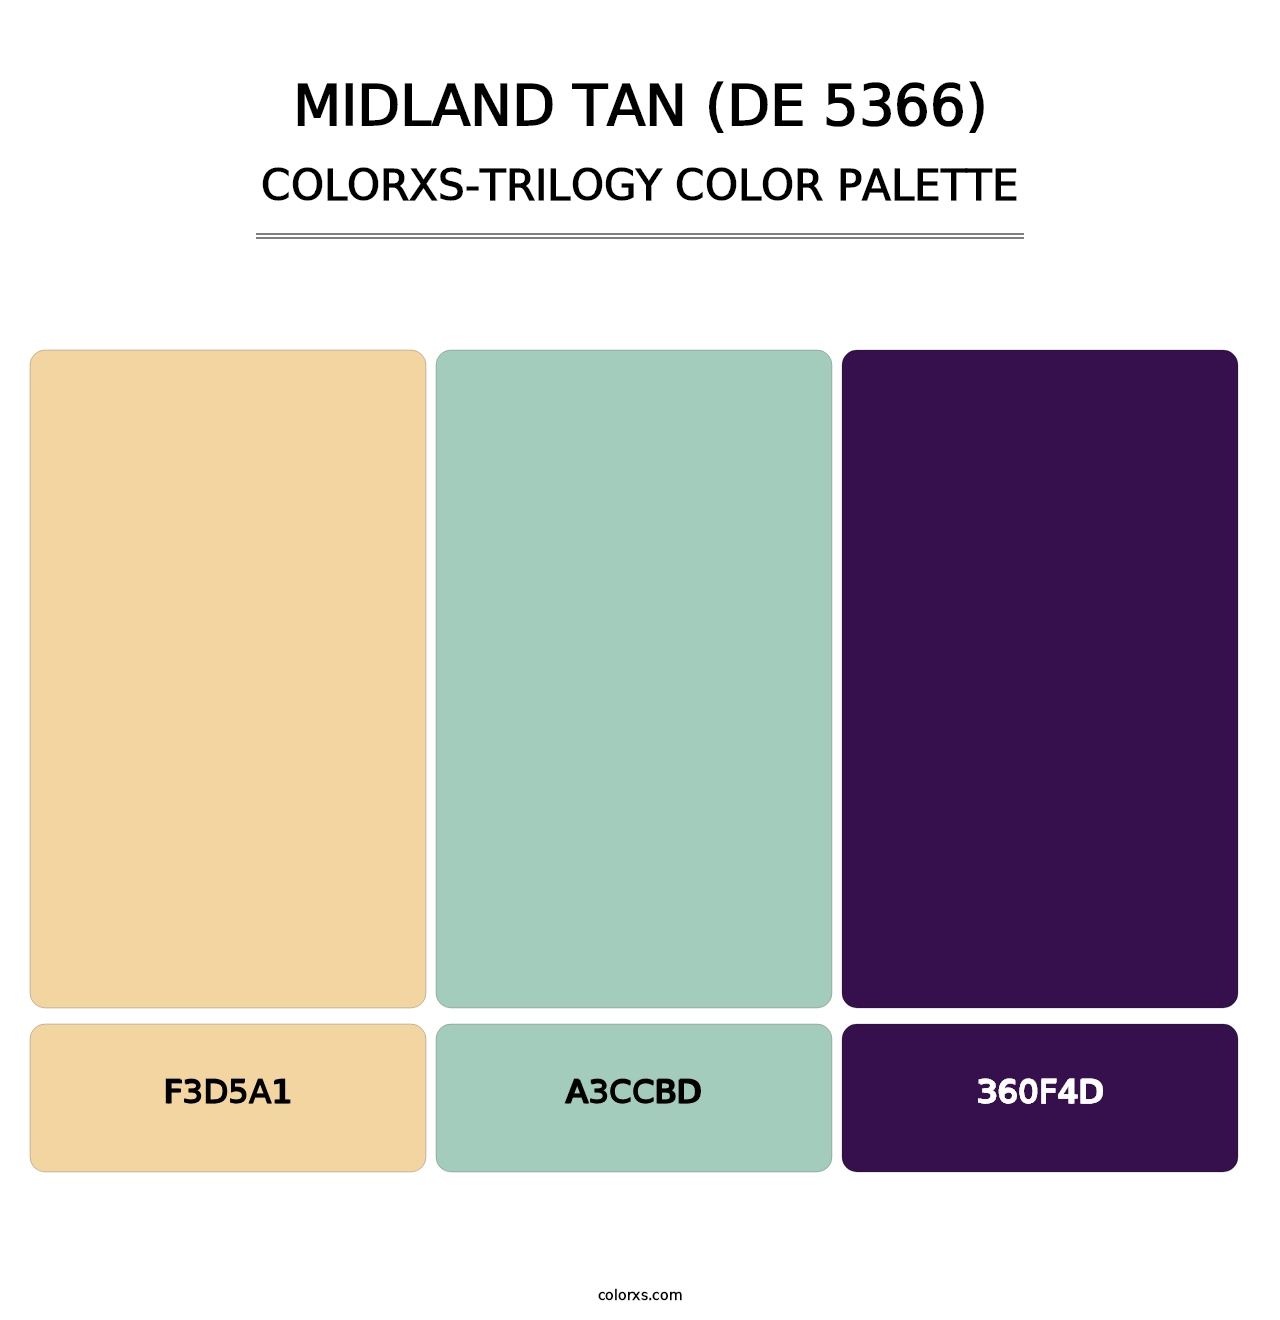 Midland Tan (DE 5366) - Colorxs Trilogy Palette